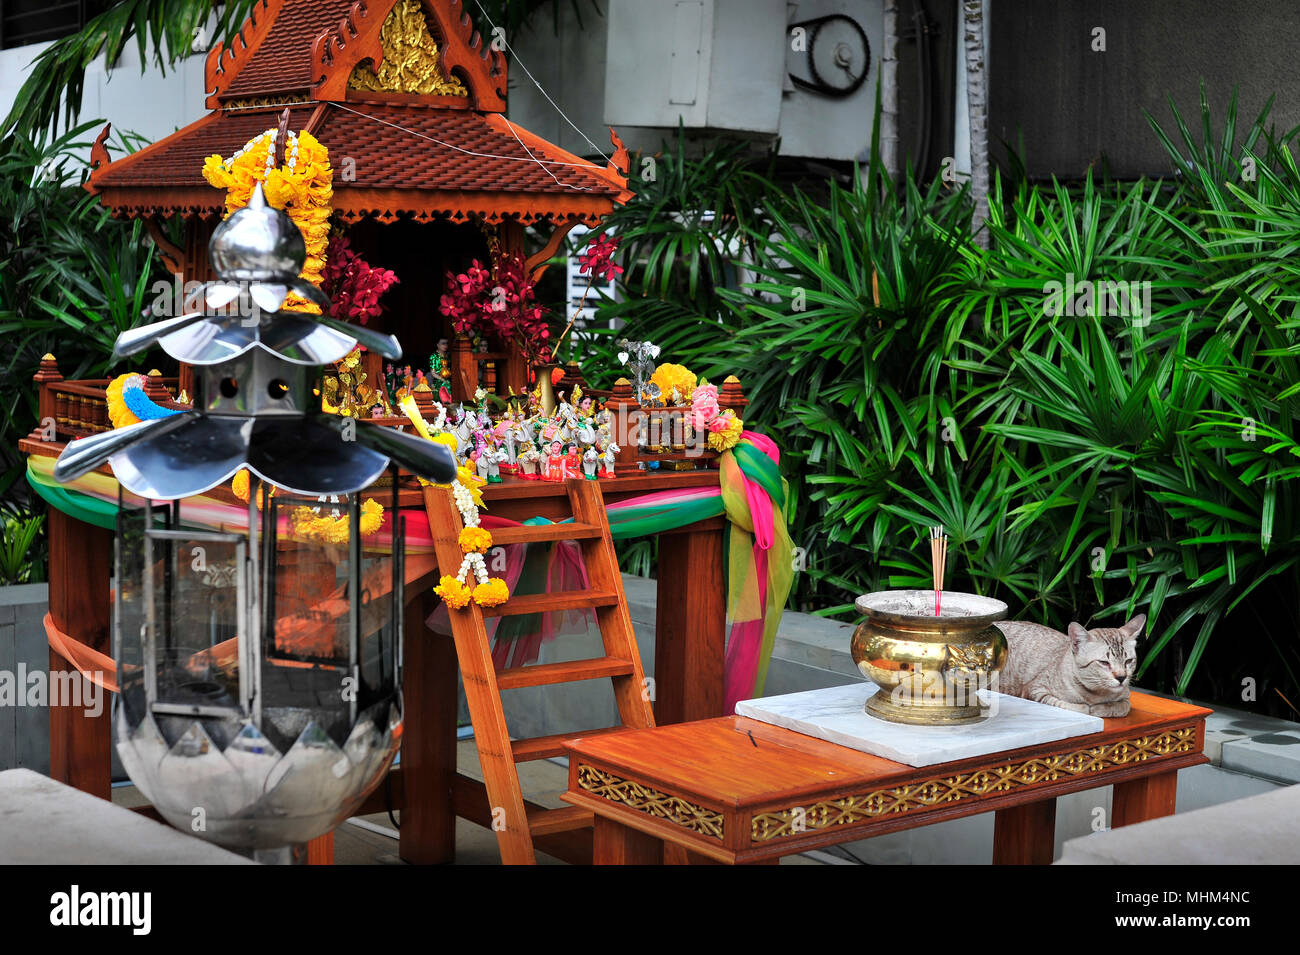 Buddhistische Bilderwelt mit Graue Katze Pattaya Thailand Stockfoto